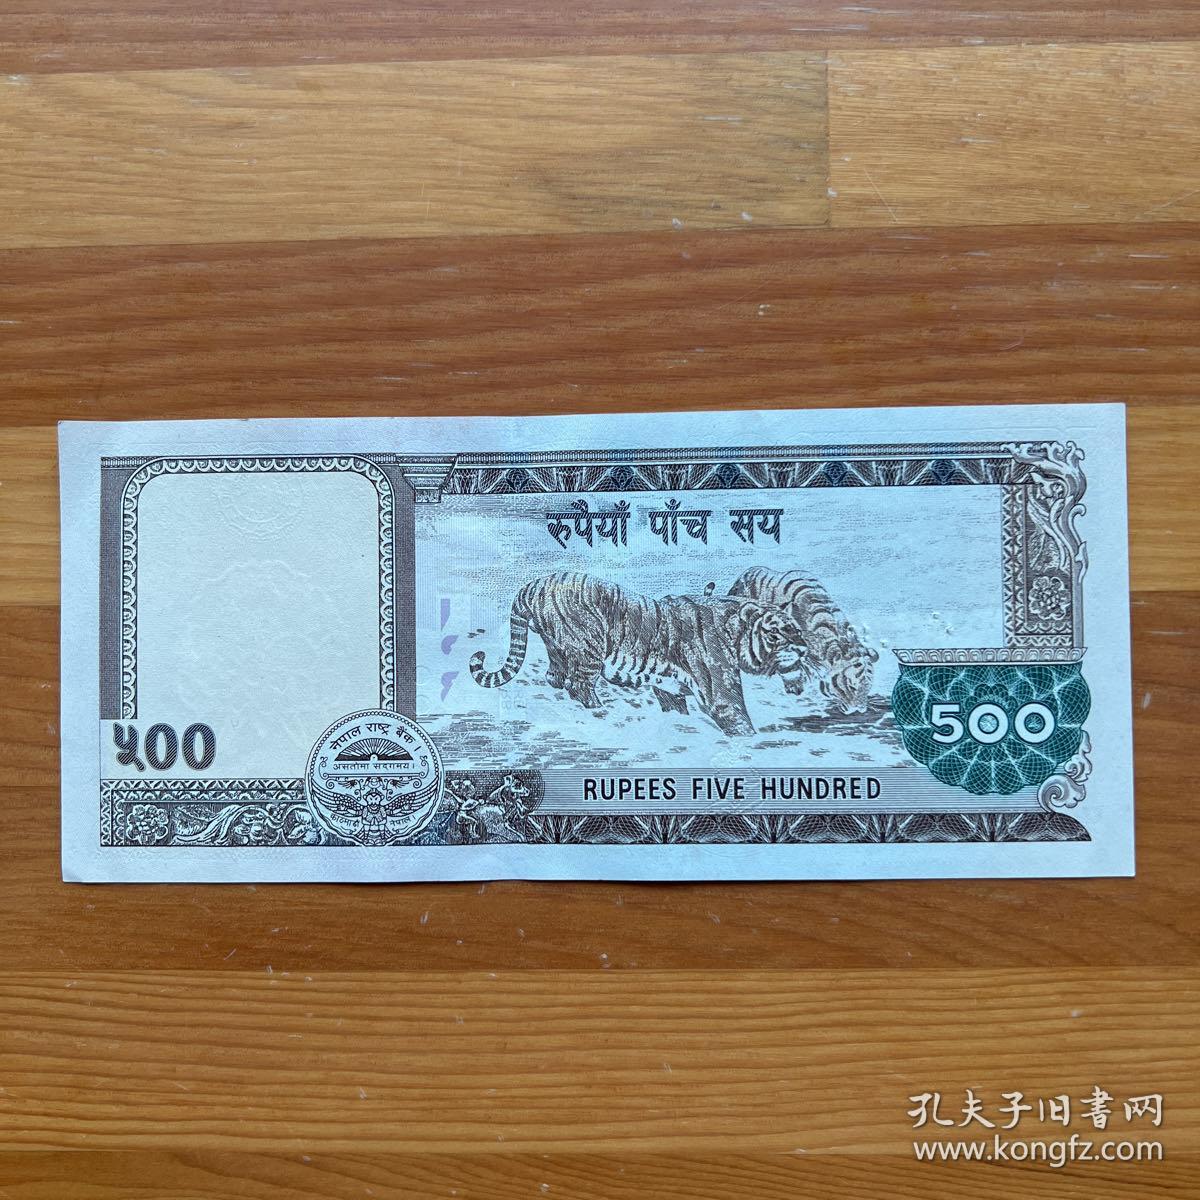 尼泊尔钱币10卢比塑料钞2种版本2002-2005年-价格:16元-se98739404-外国钱币-零售-7788收藏__收藏热线